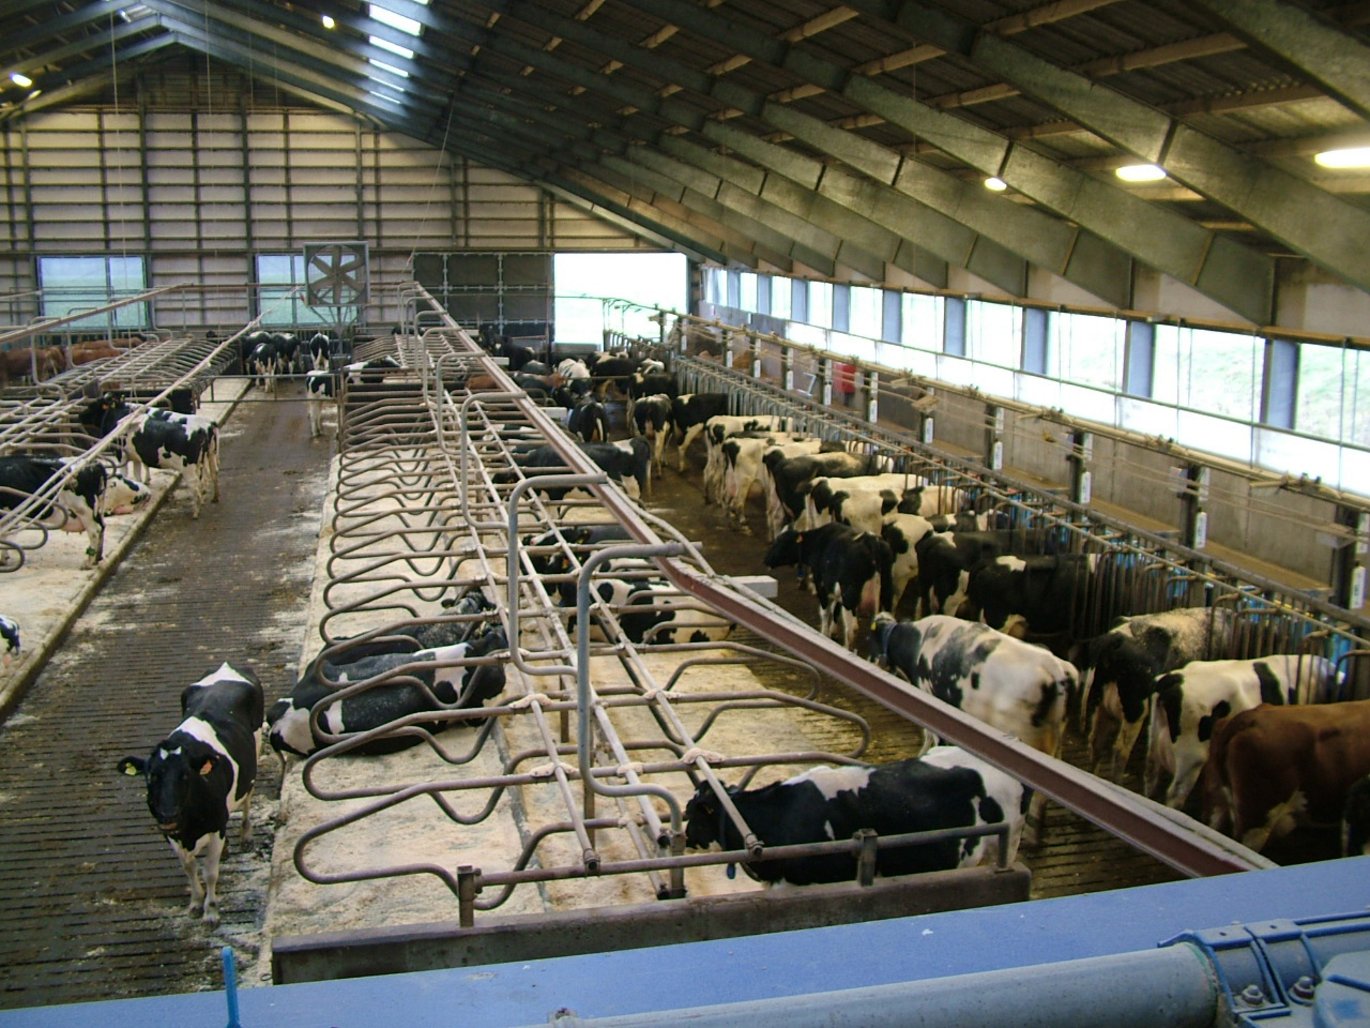 AU forskere deltager i et nyt projekt, som skal udvikle en praksis-anvendelig metode til at indsamle foderdata på den enkelte ko ude i kvægbesætningerne. Arkivfoto: Danmarks Kvægforskningscenter.